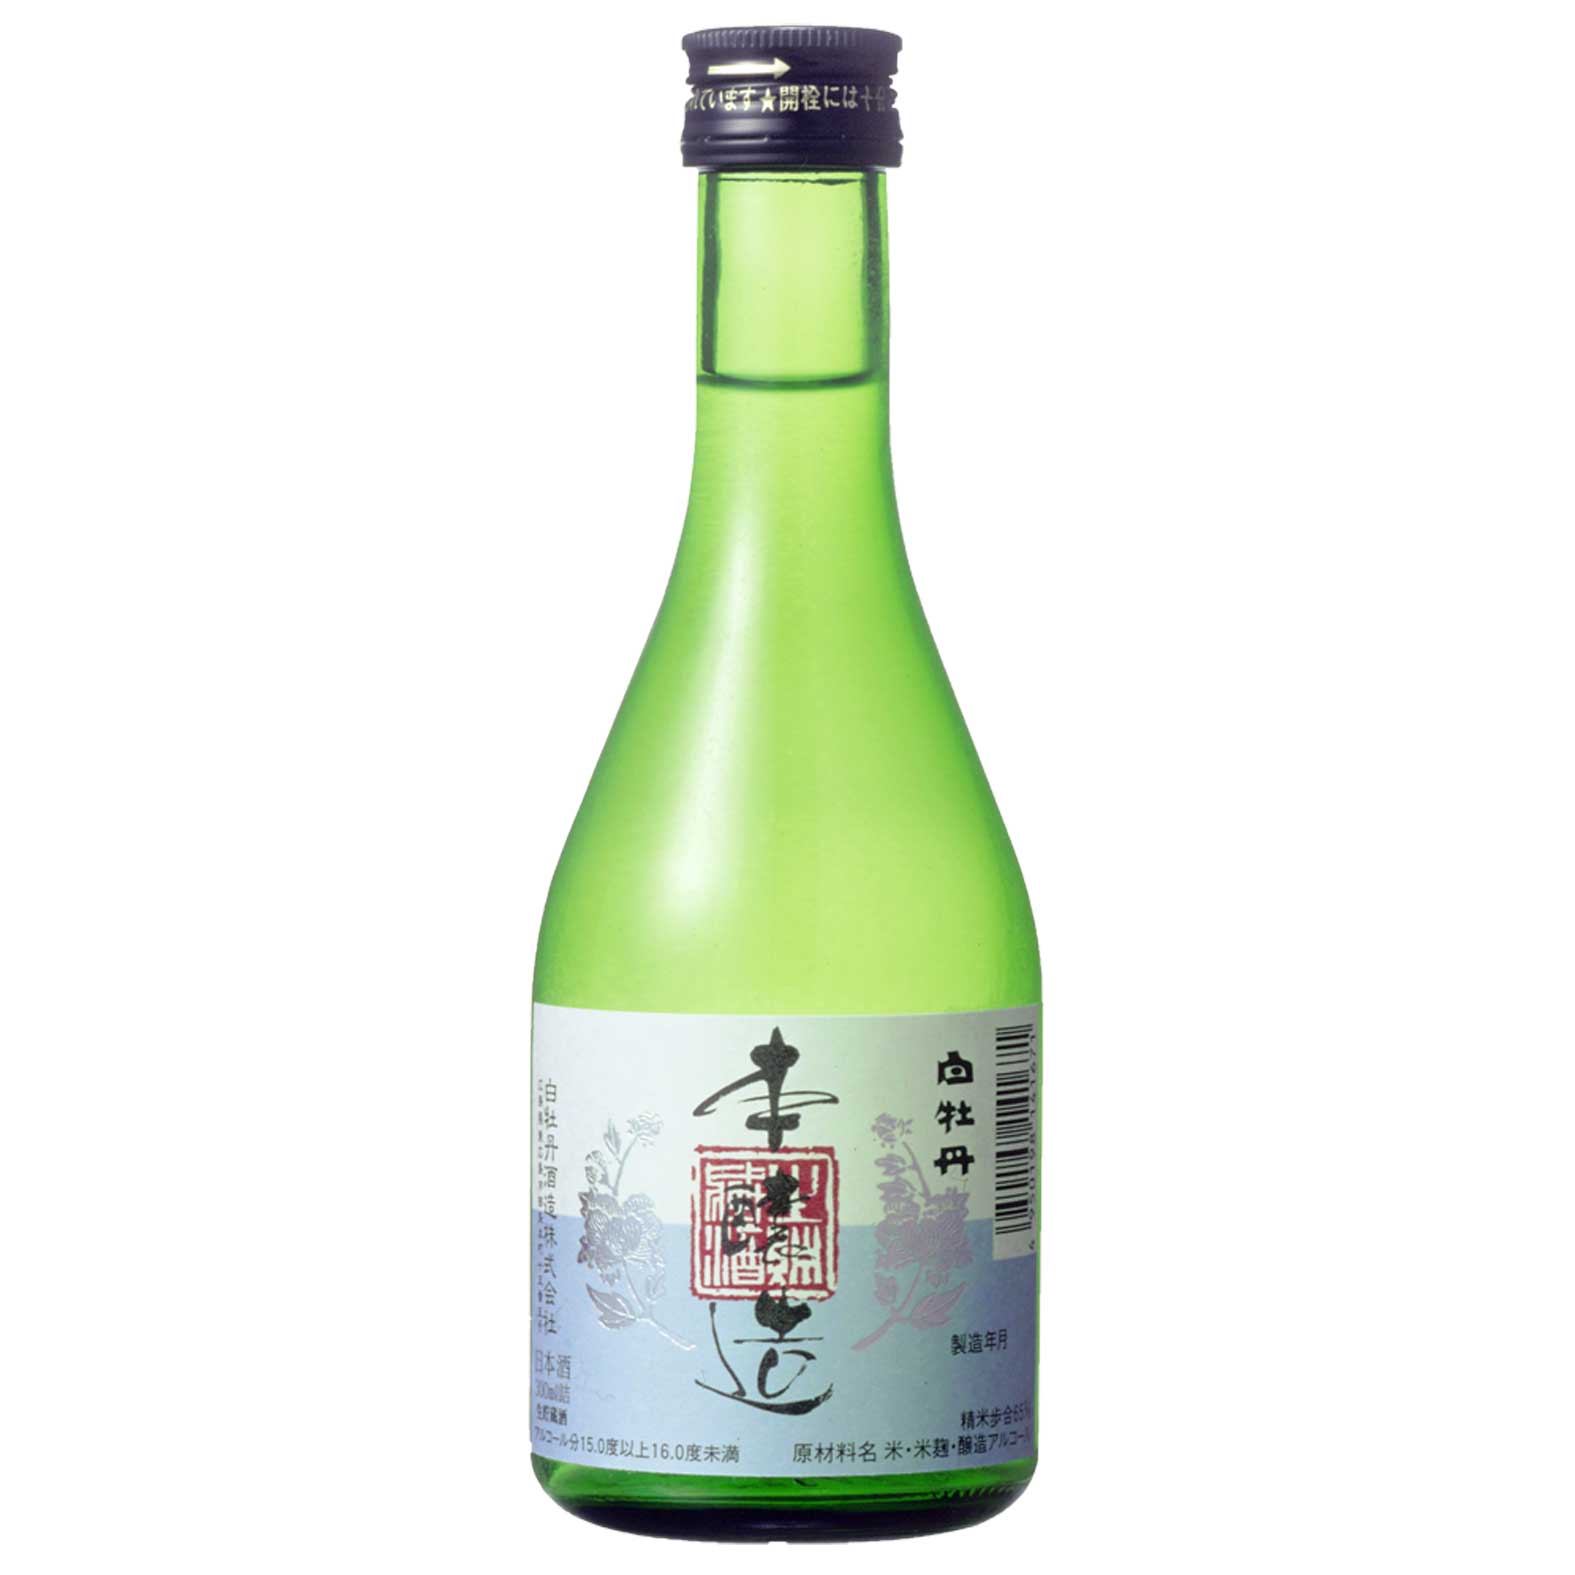 【日本酒 白牡丹】本醸造 生貯蔵酒 300ml瓶詰